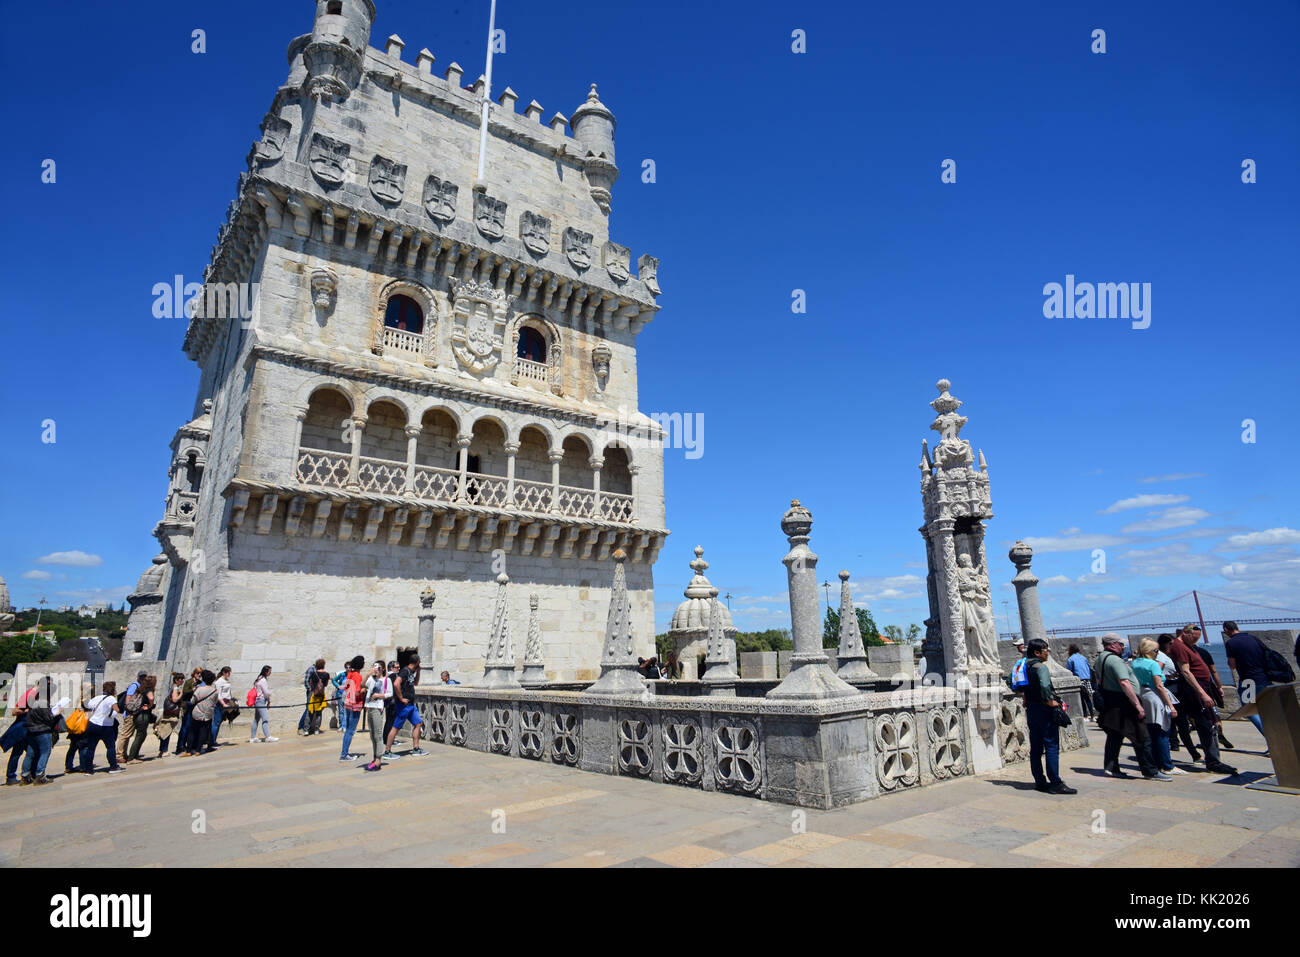 Belém Tower o torre di San Vincenzo, una torre fortificata situata nella parrocchia civile di Santa Maria de Belém nel comune di Lisbona, Portogallo. Foto Stock